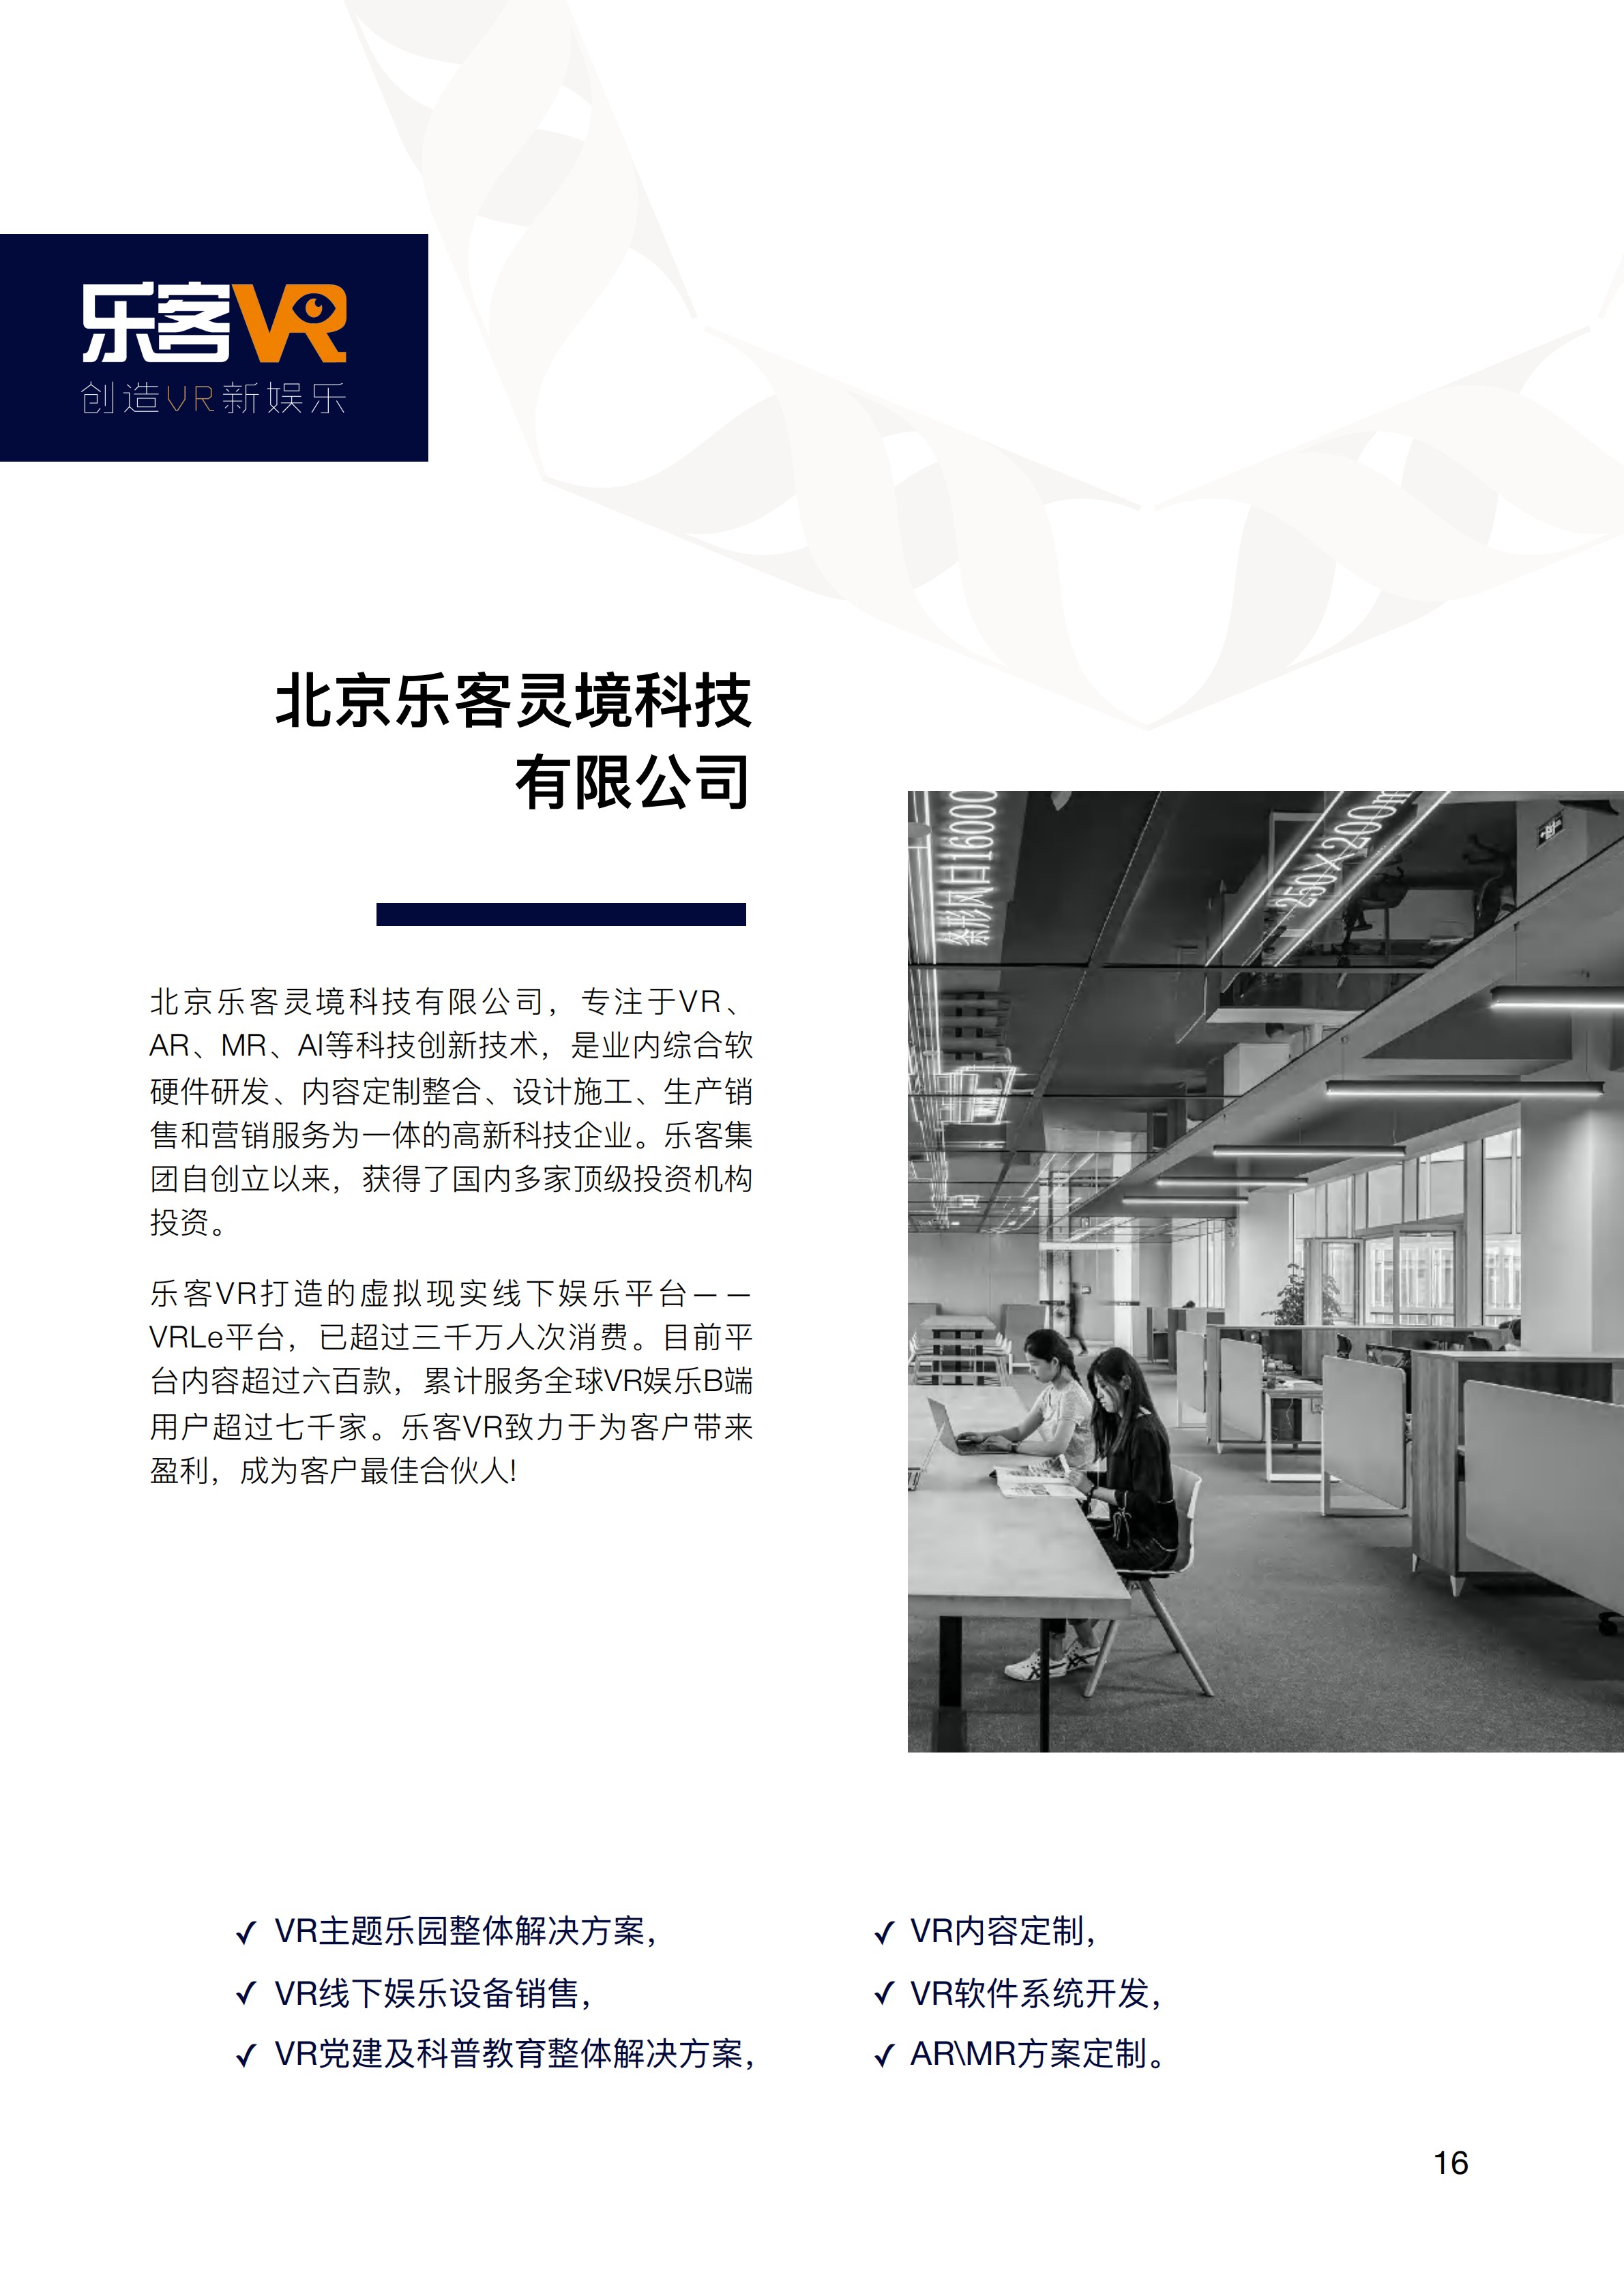 中关村出海产品手册(Chinese Simplified) 2020 Zhongguancun Product Handbook v1.0_19.jpg